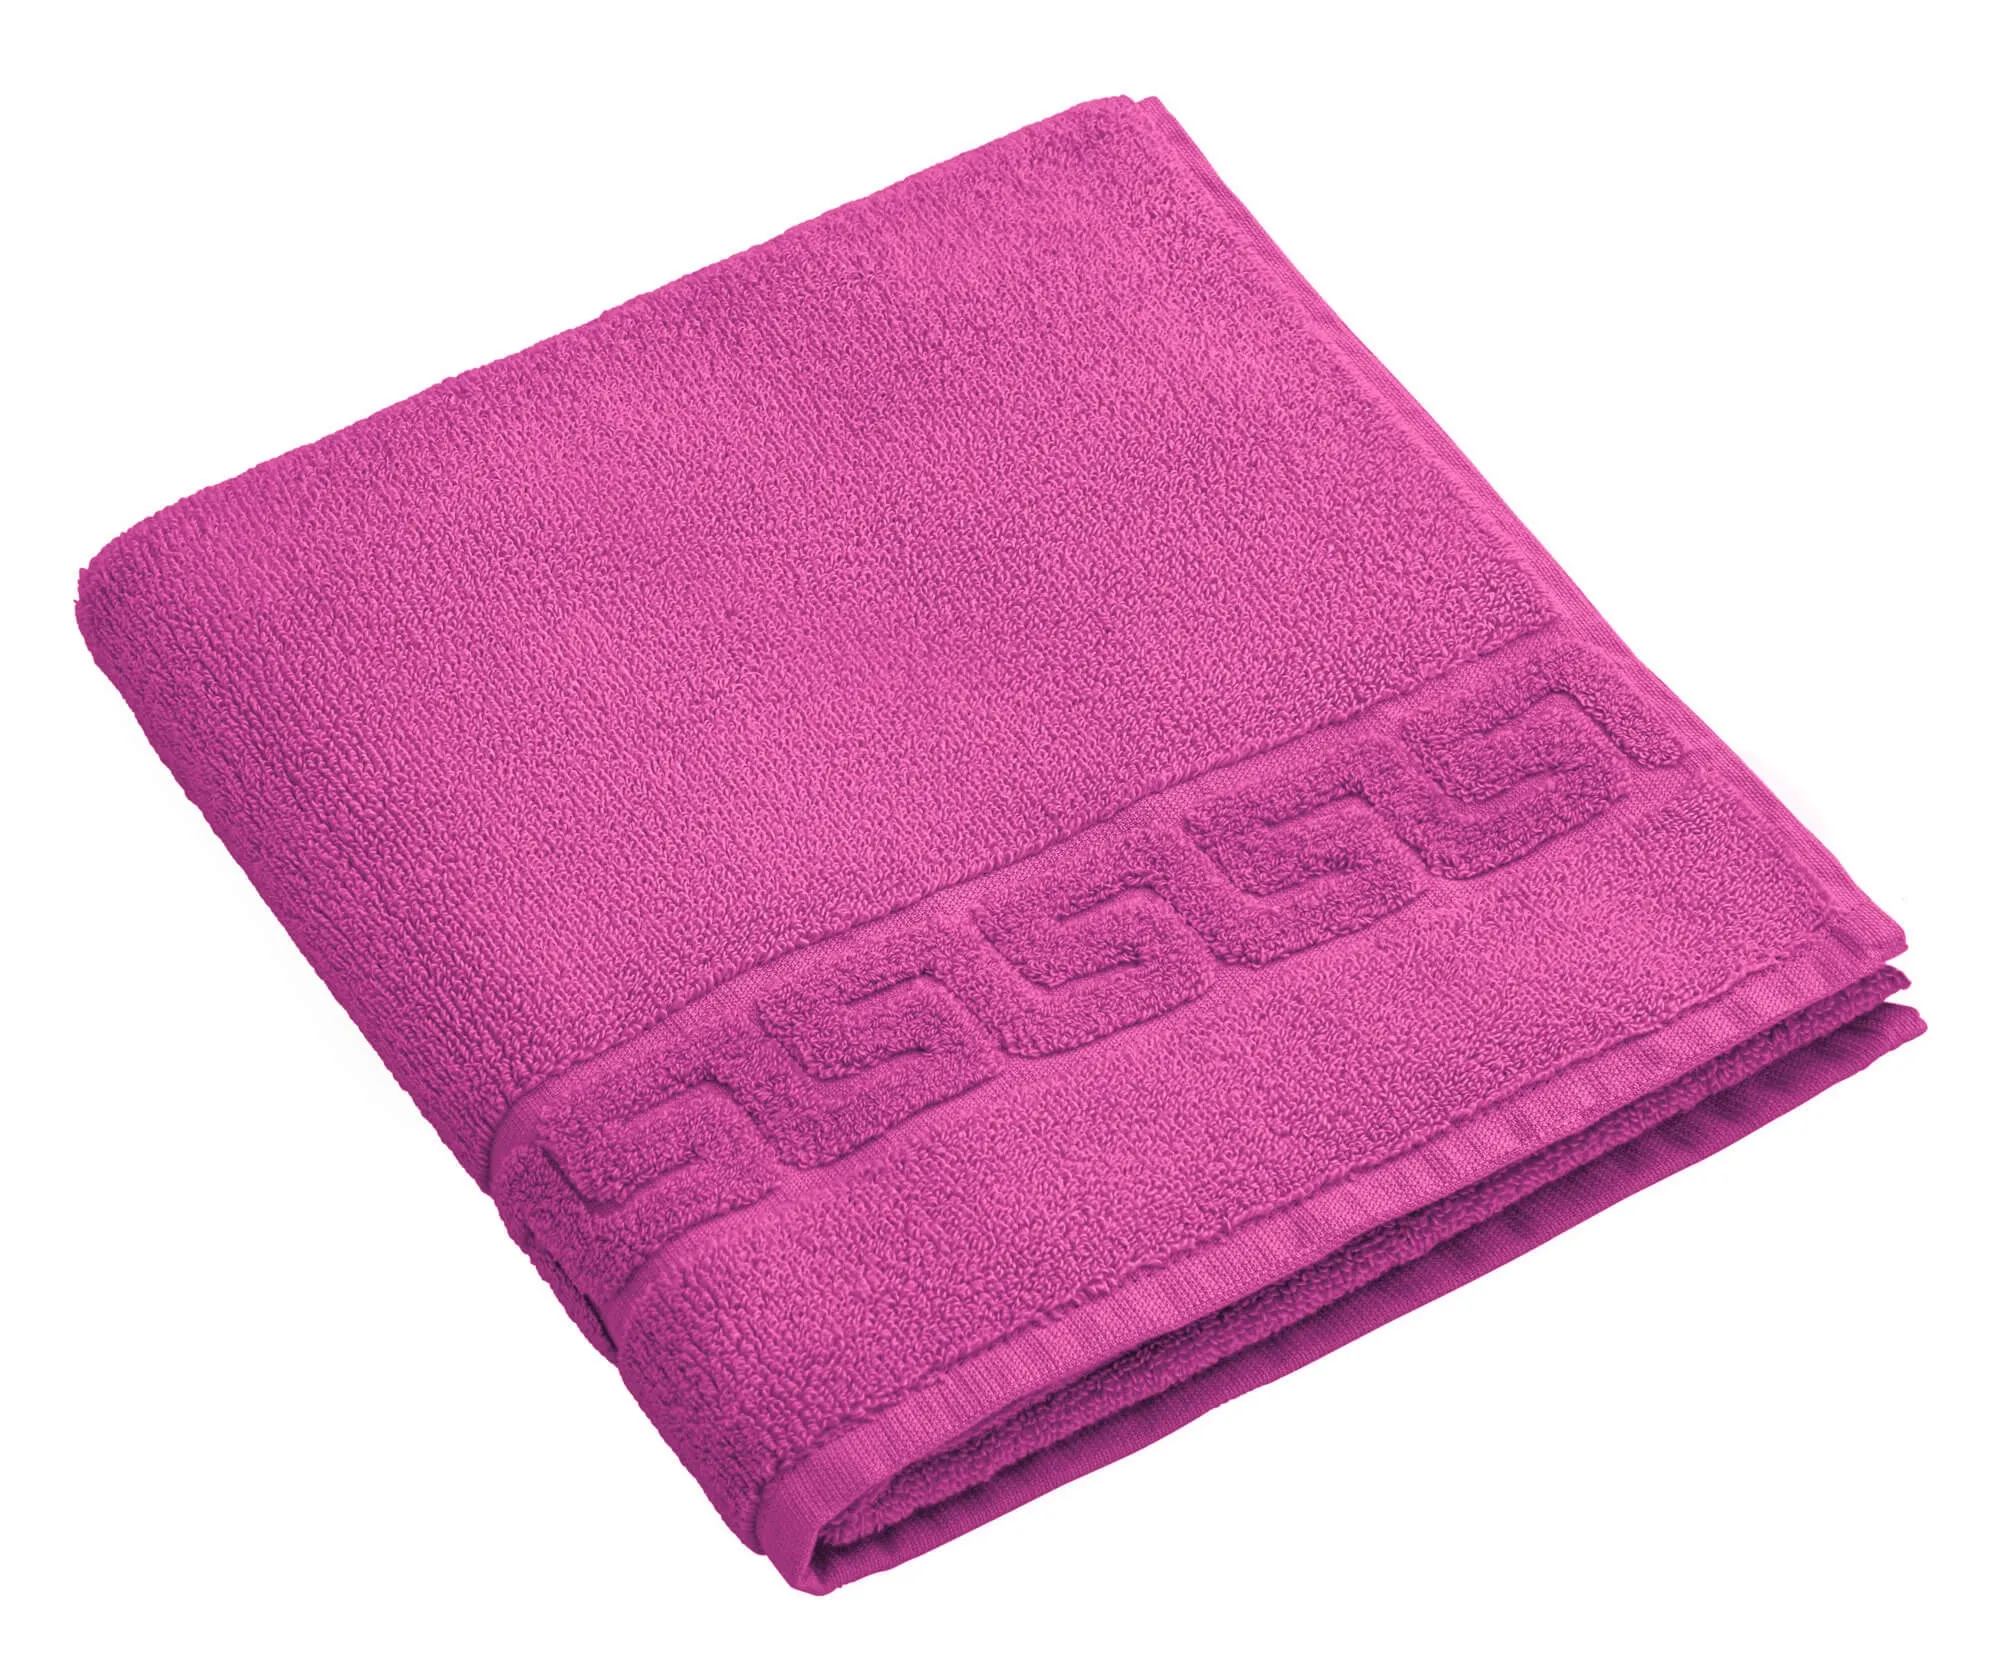 Махровое полотенце Dreamflor пурпурного цвета от магазина Beddington.ru